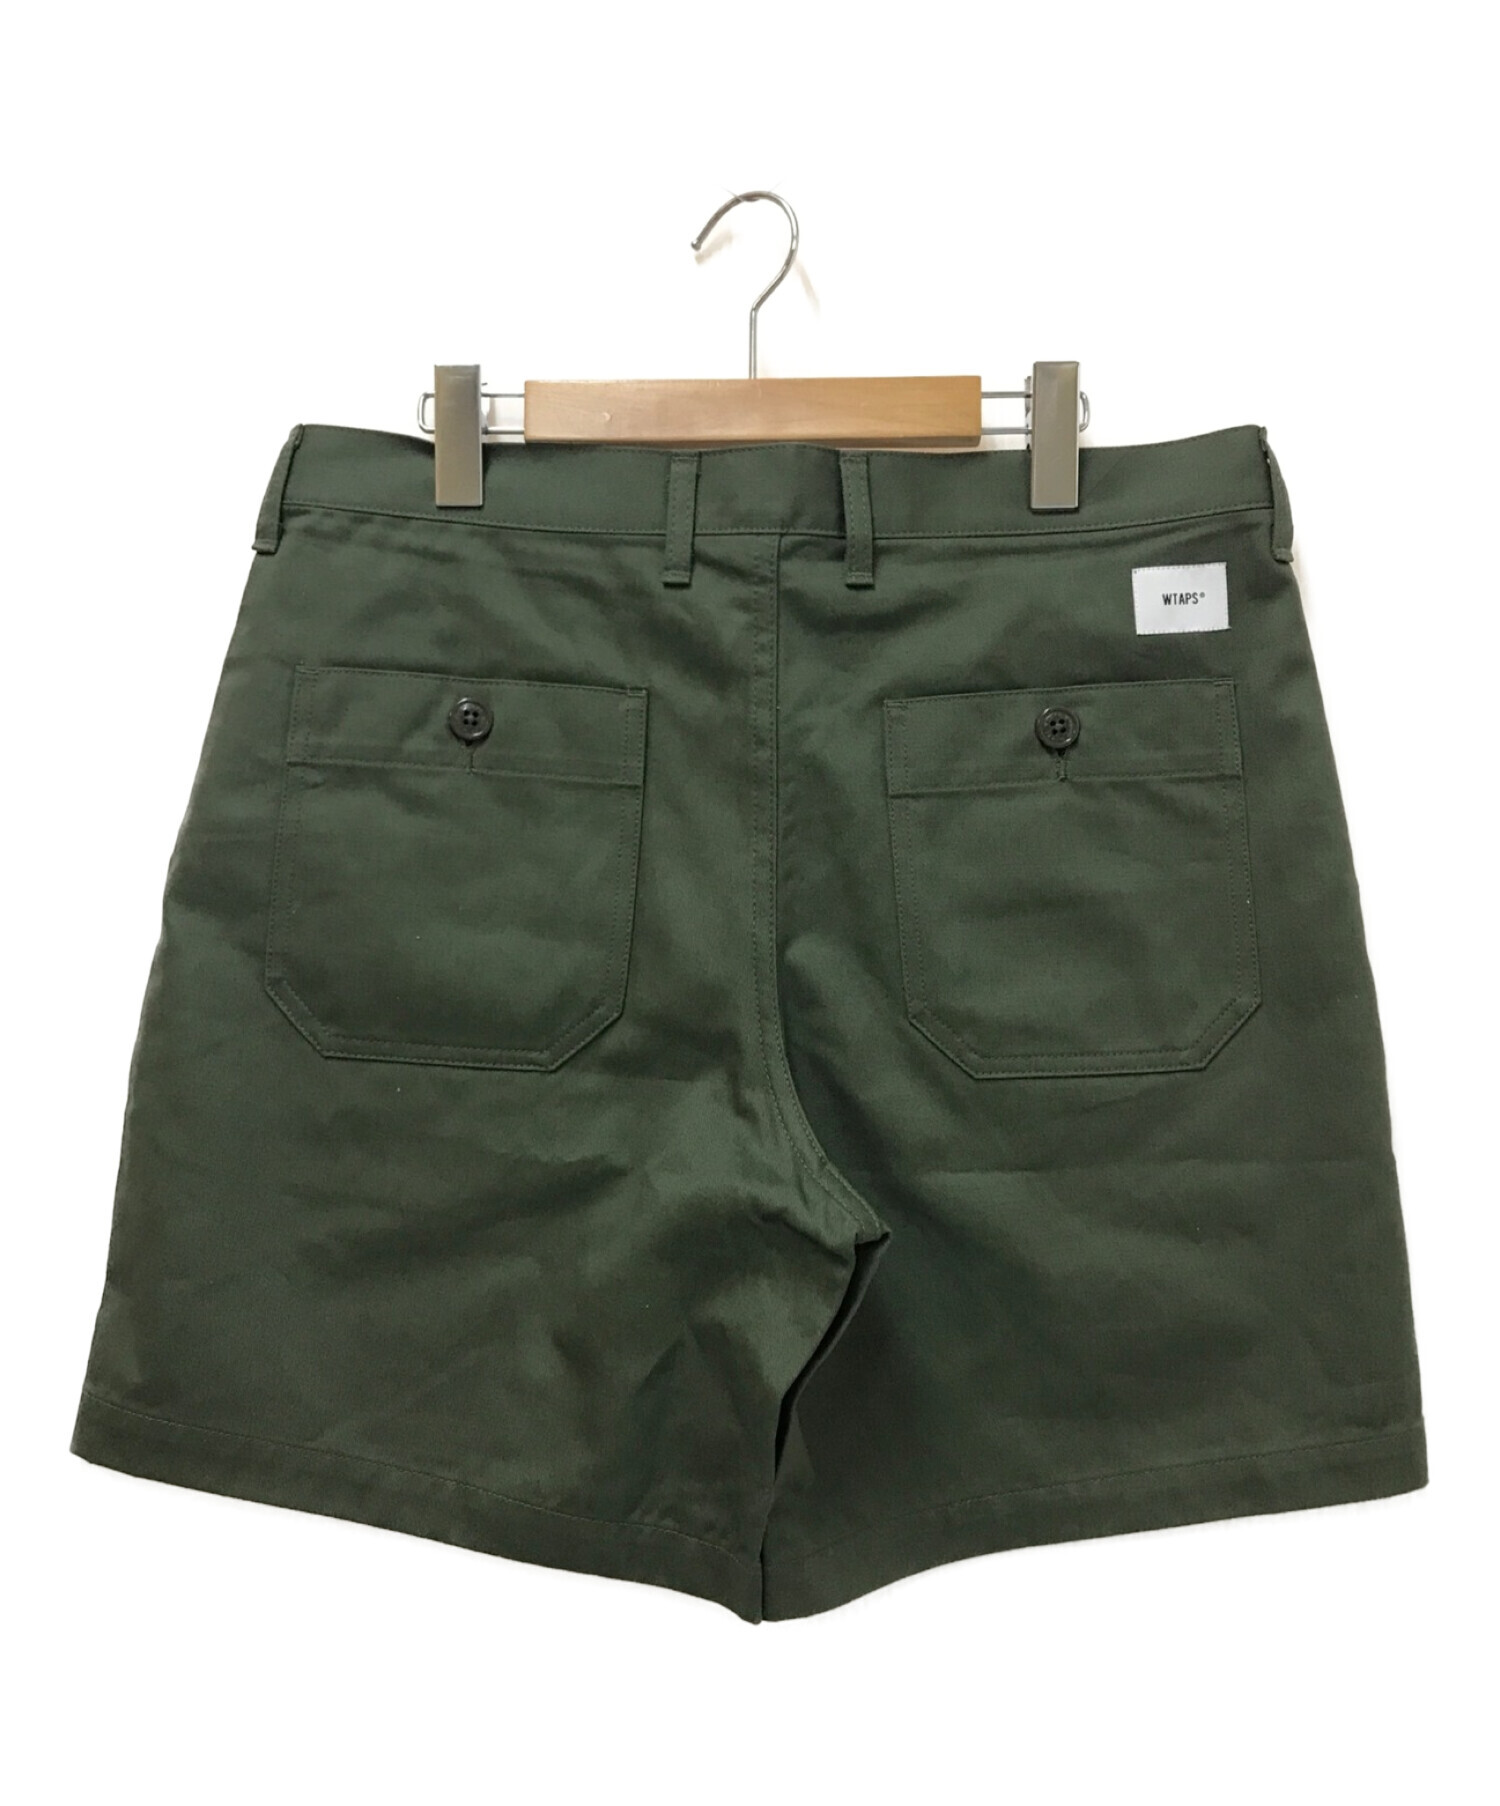 Wtaps shorts olive size 03